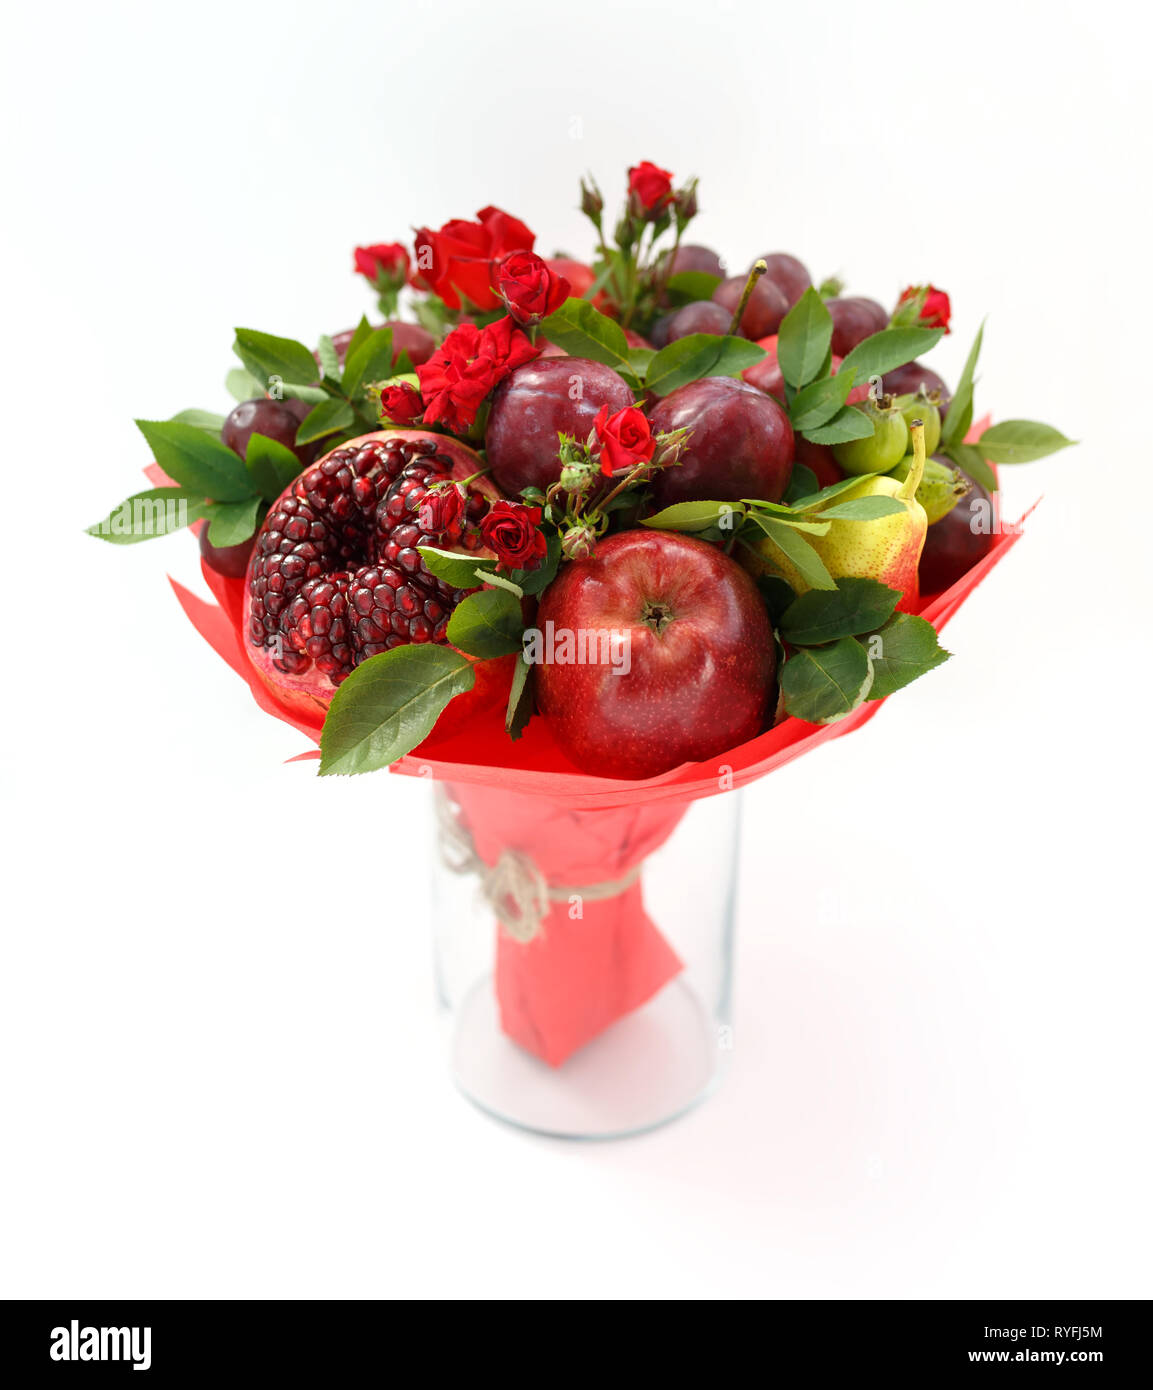 Bel bouquet consistente di melograno, mele, susine e scarlet rose in piedi in un vaso su una tavola di legno Foto Stock